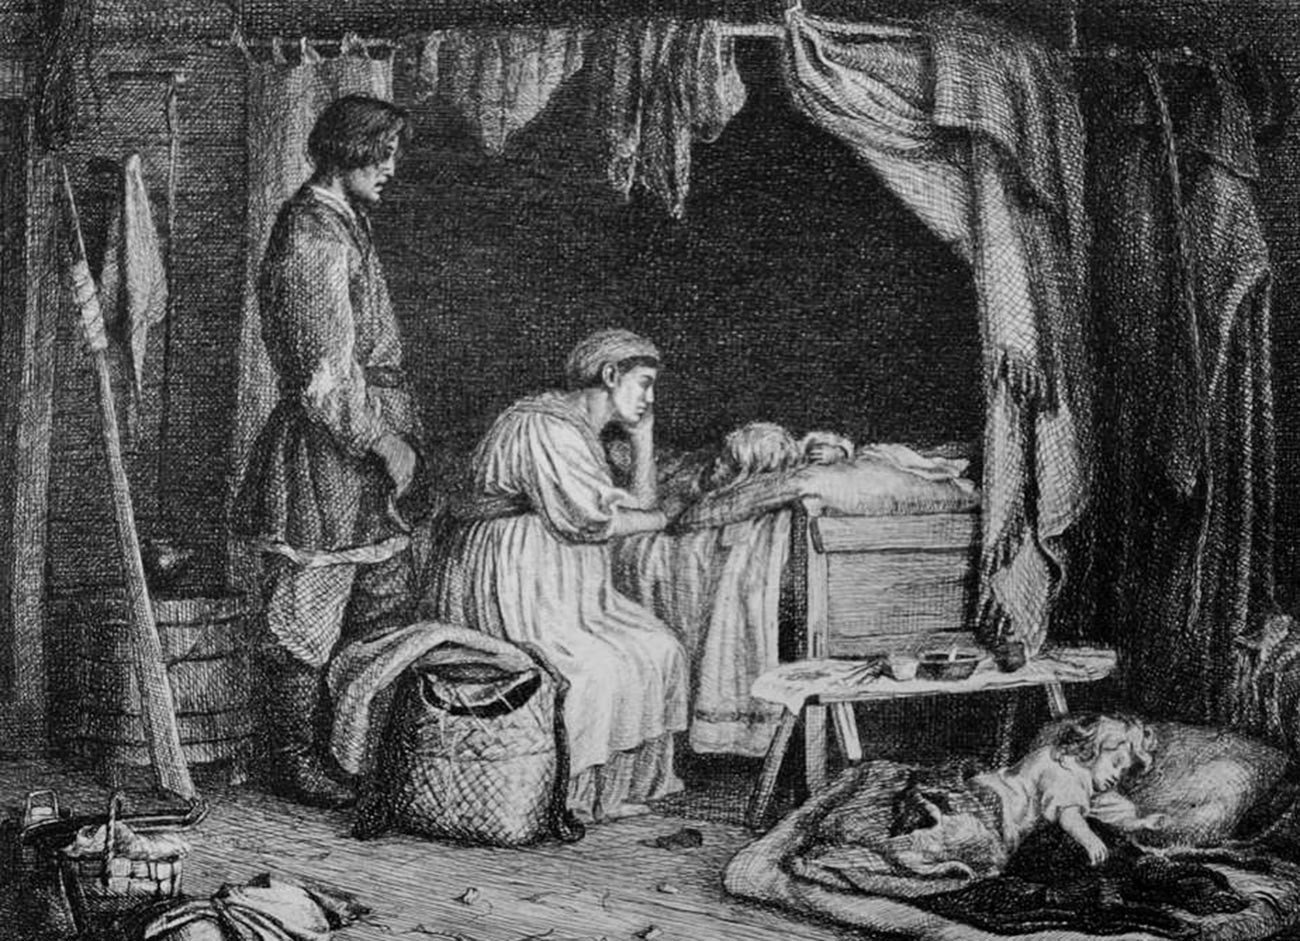 La mayoría de las familias campesinas de Rusia eran terriblemente pobres. Nacían muchos niños, pero muchos morían en la infancia.
